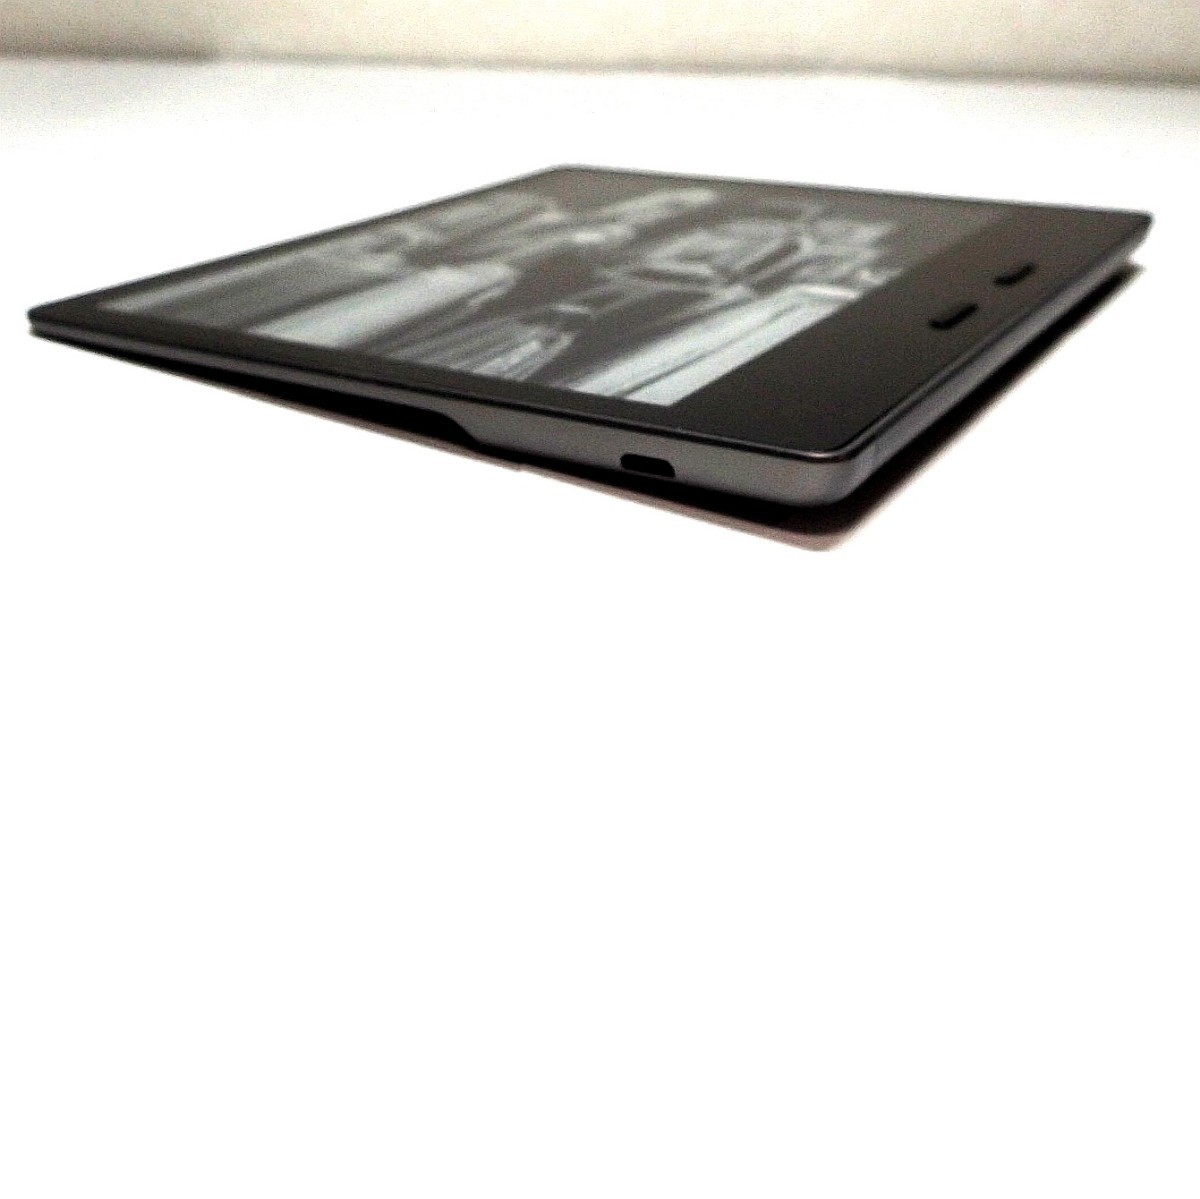 キンドル Kindle Oasis (第9世代) 電子書籍リーダー 防水機能搭載 Wi-Fi+3G 32GB アマゾン amazon 7インチ 300ppi_画像4